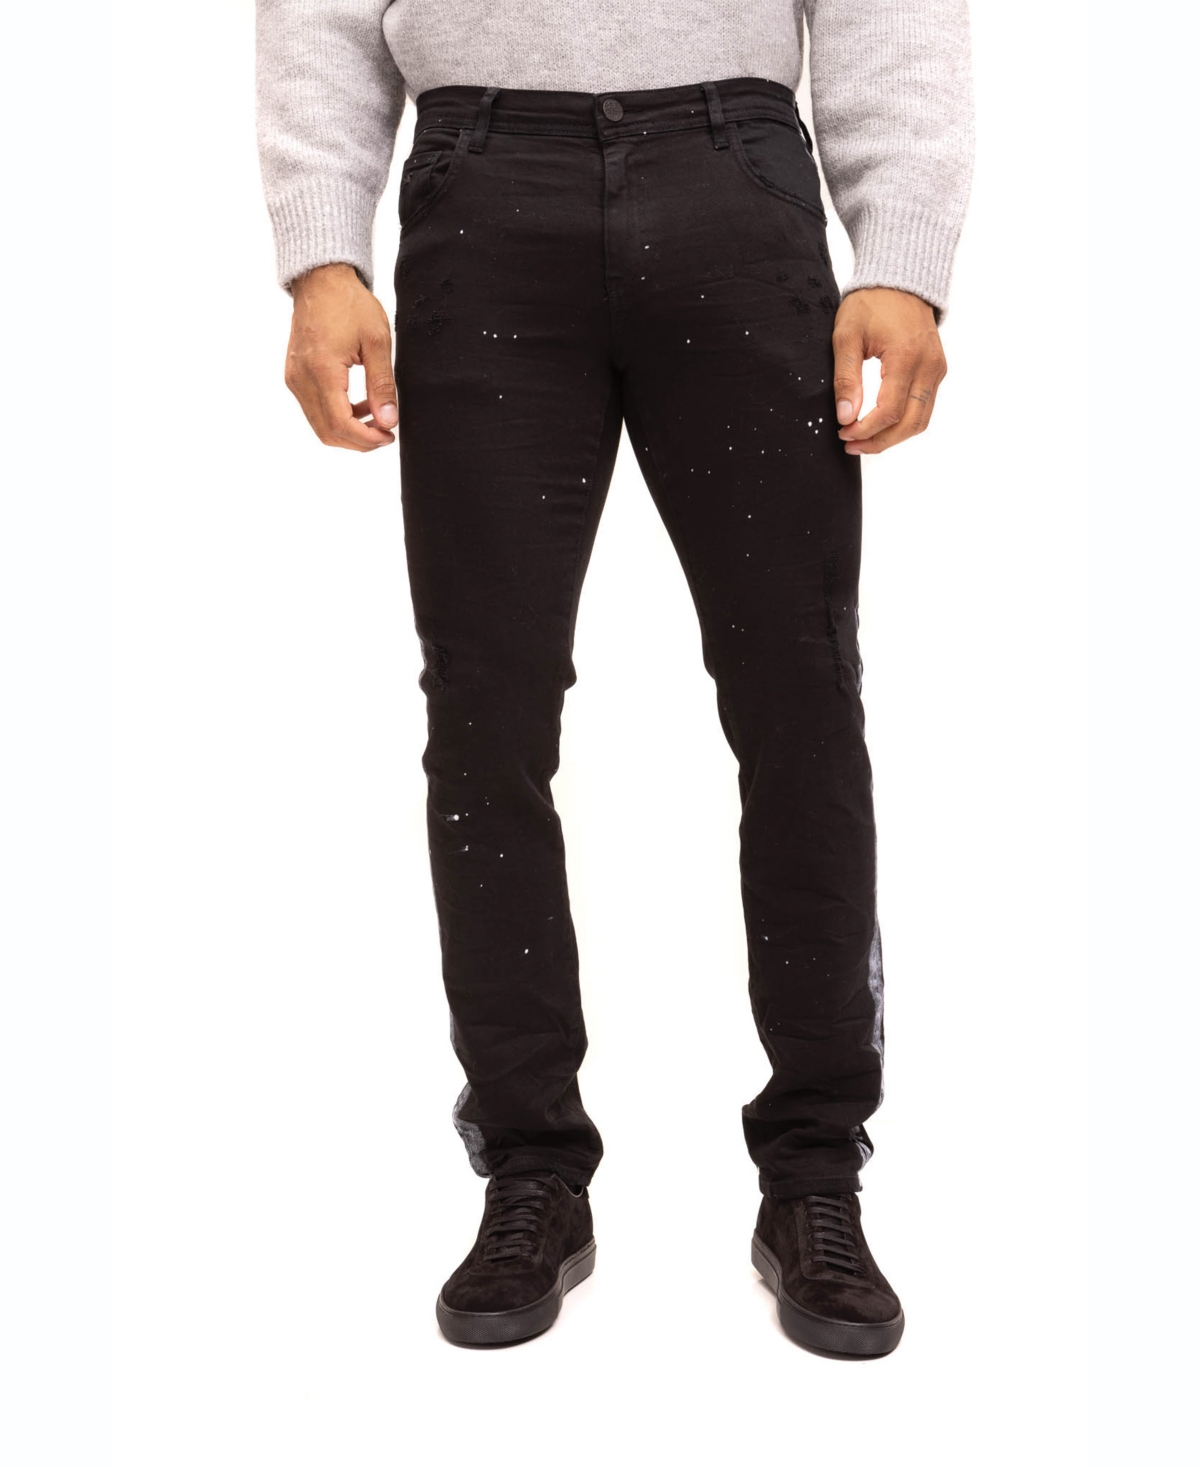 Men's Modern Splattered Stripe Jeans - Black